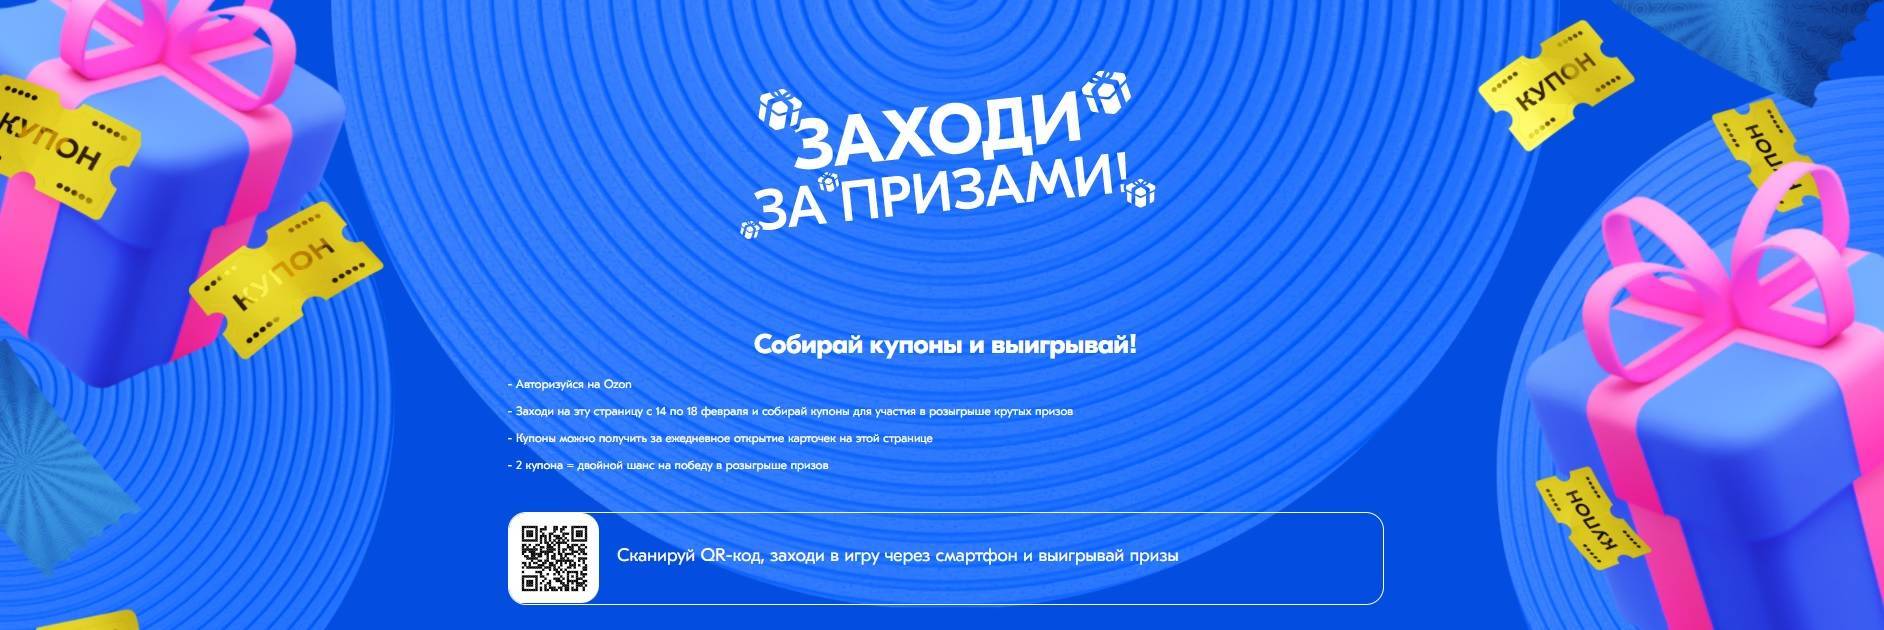 Акция Ozon.ru: «Заходи за призами»0